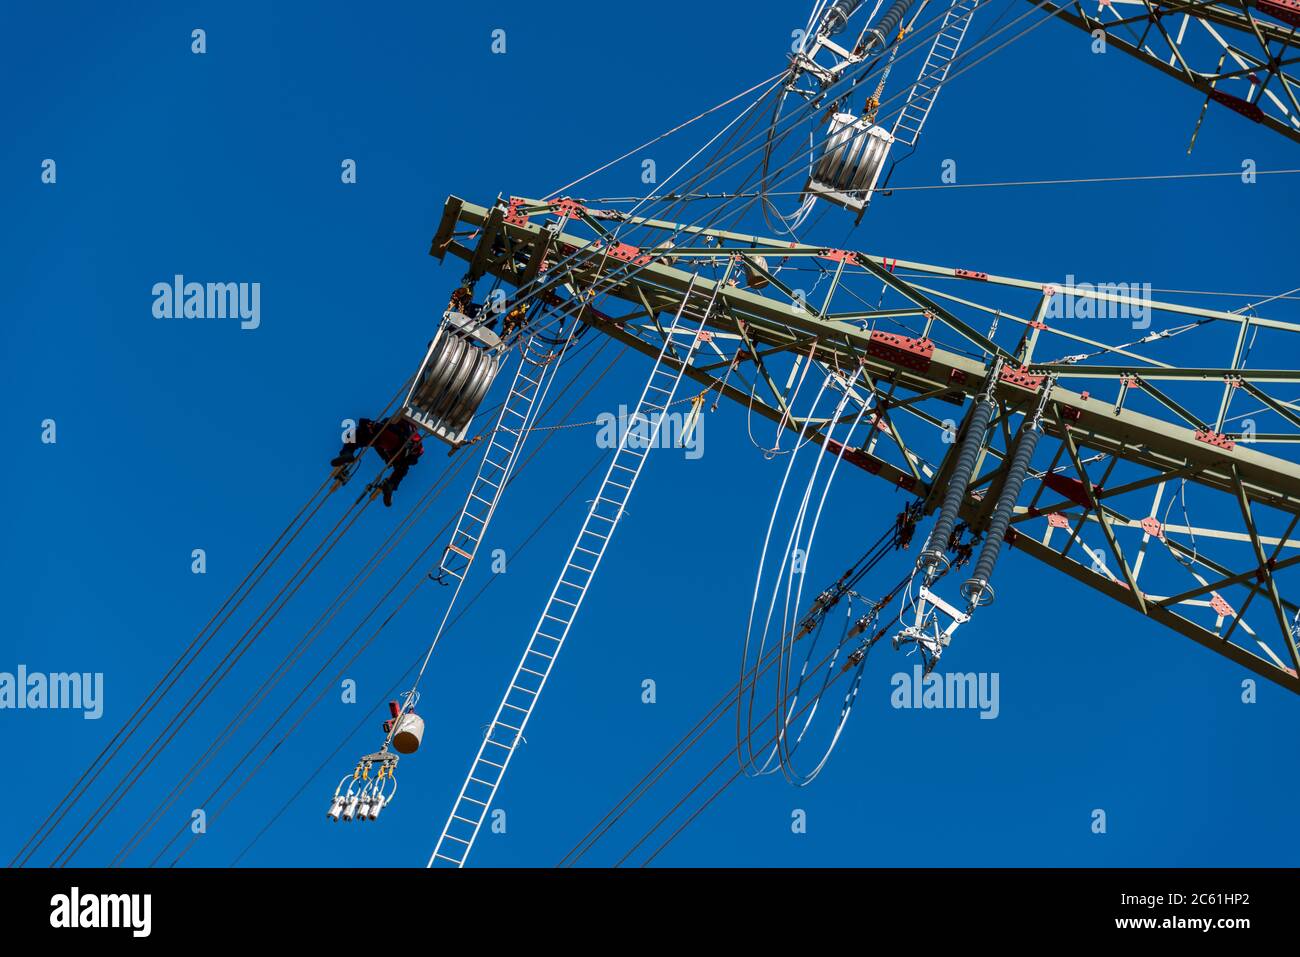 Arbeiter auf einem Hochspannungsmast vor blauem wolkenlosen Himmel Foto de stock